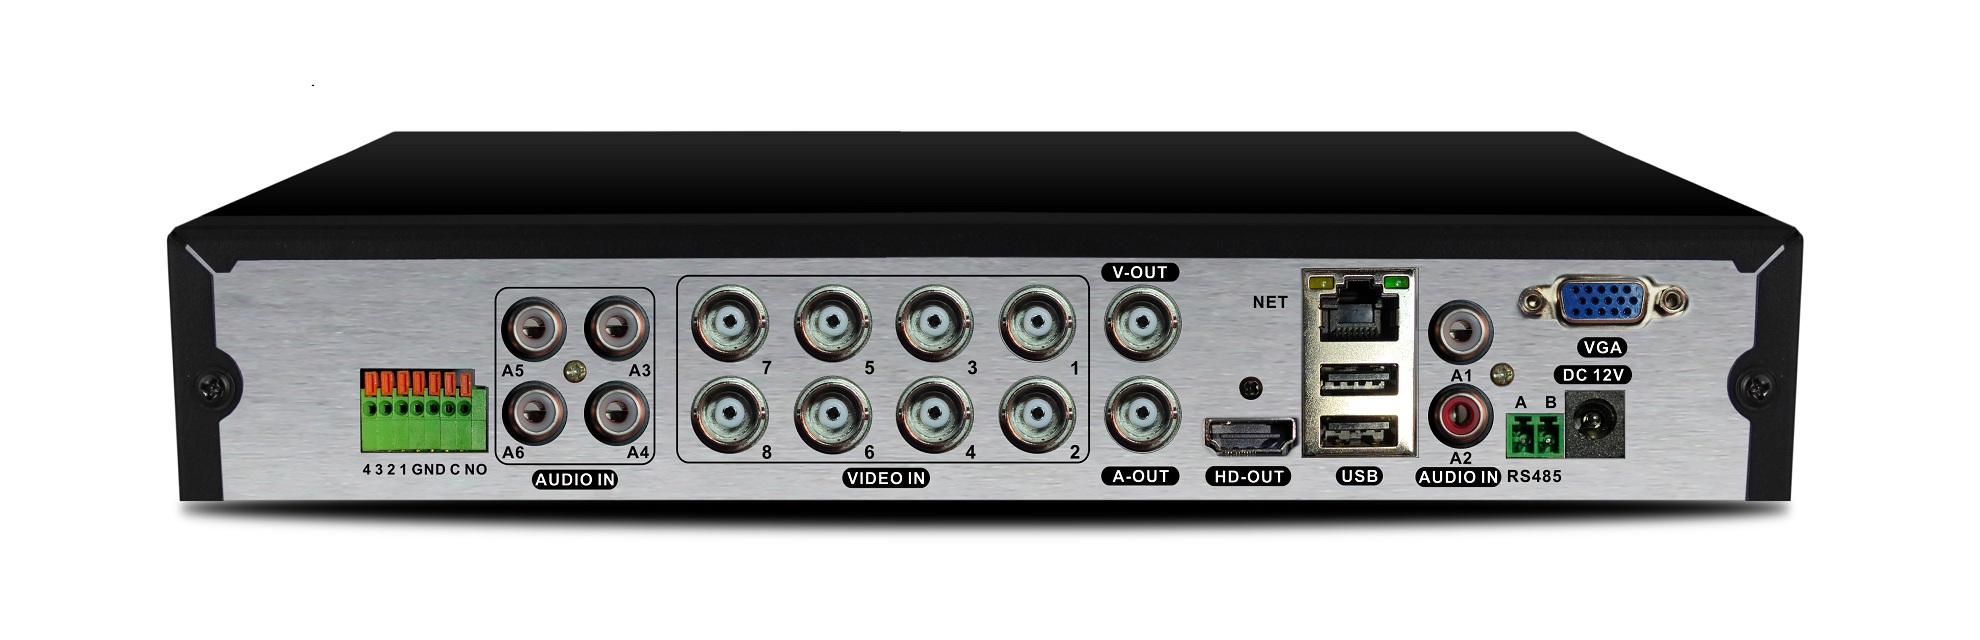 AltCam DVR823 XVR Видеорегистратор 8 канальный 8Mp_Lite 1080P 6 аудио (SATA*1 8ТБ) BitVision